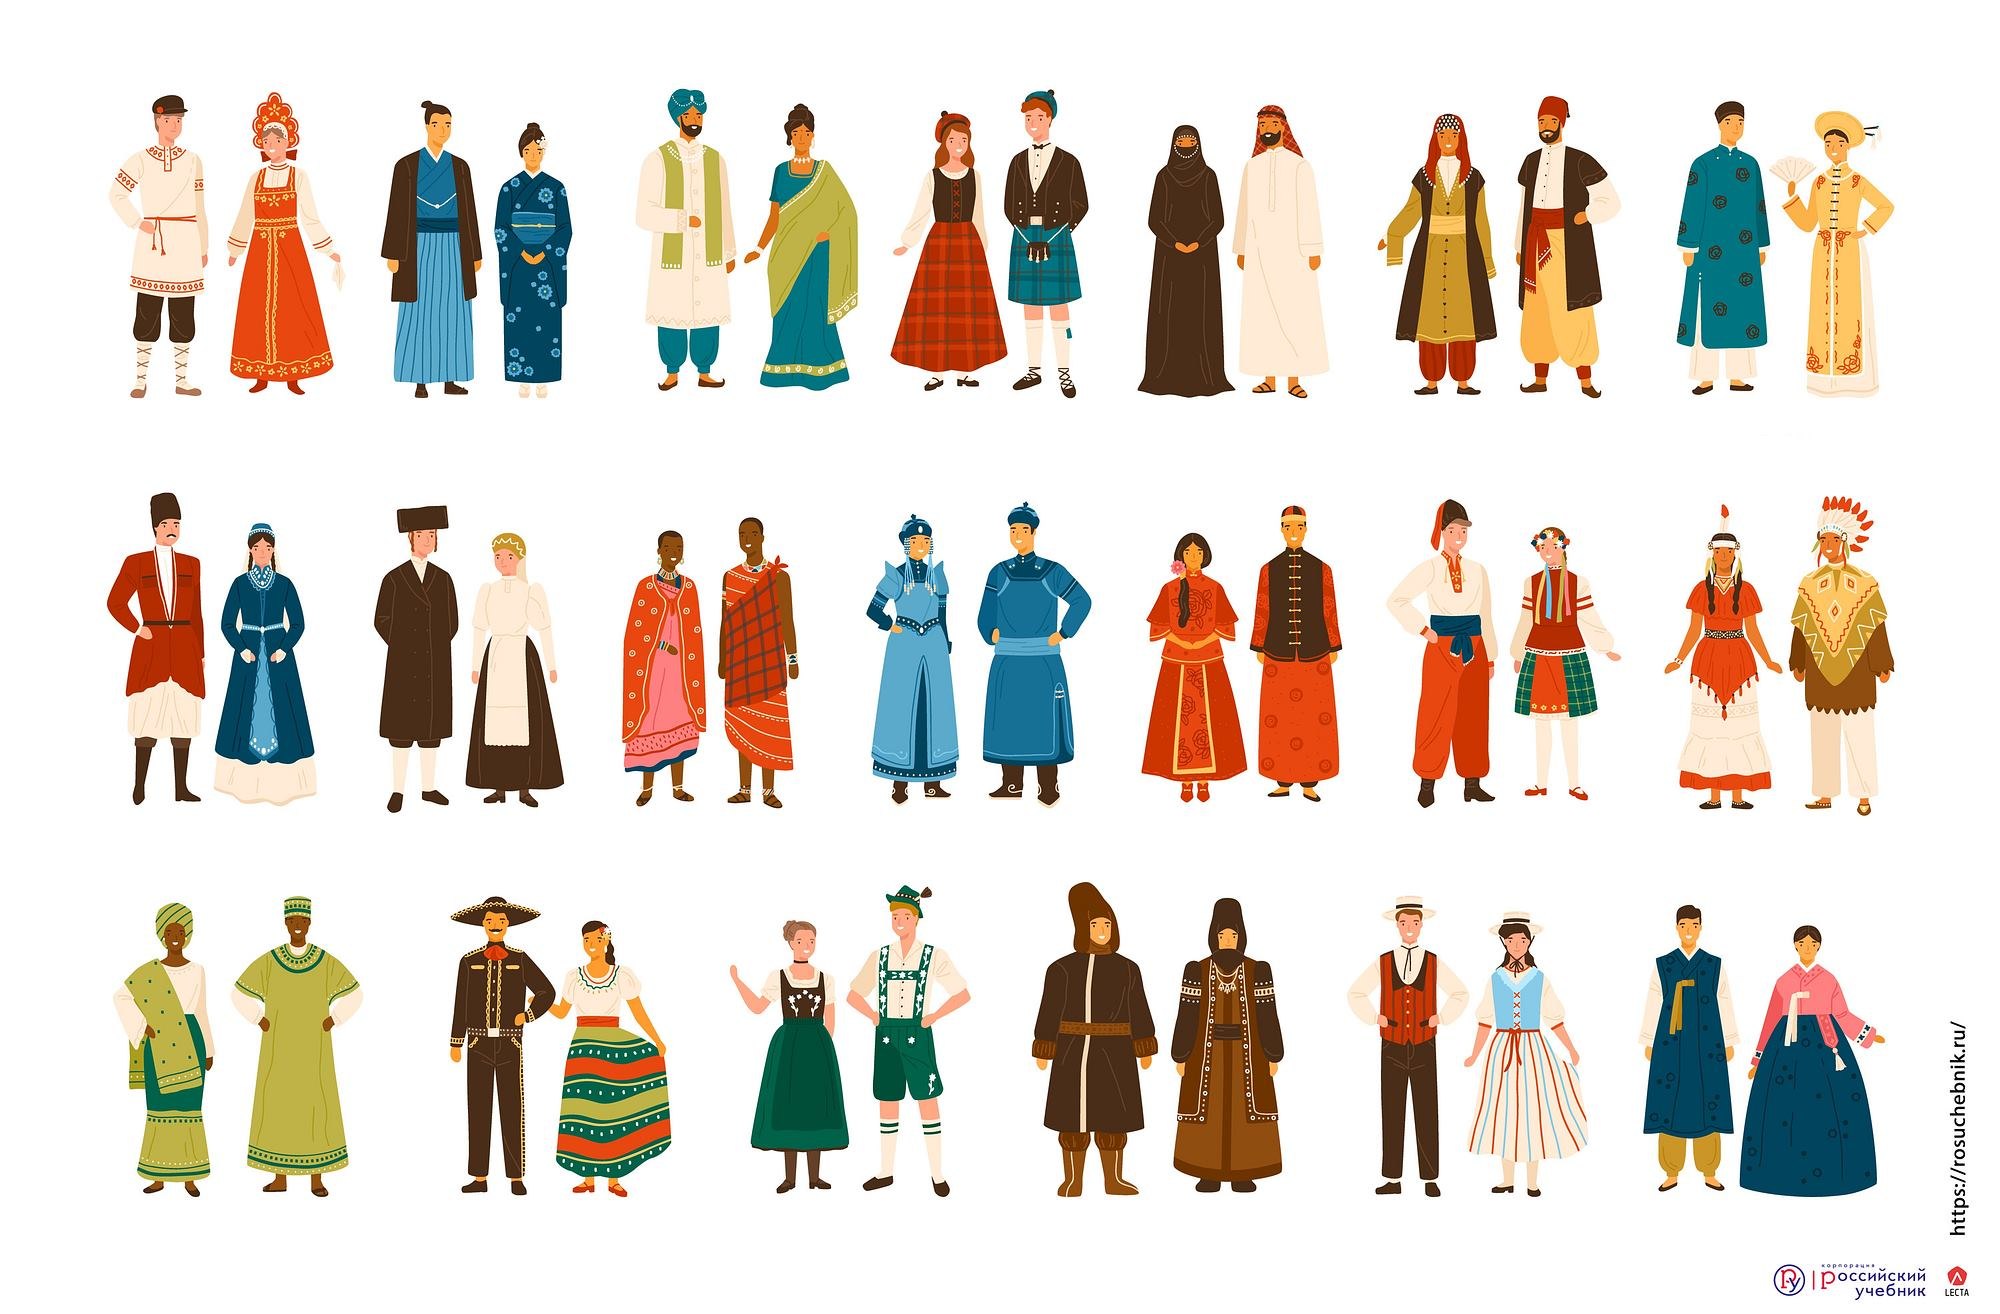 Изображения костюмов разных времен и народов